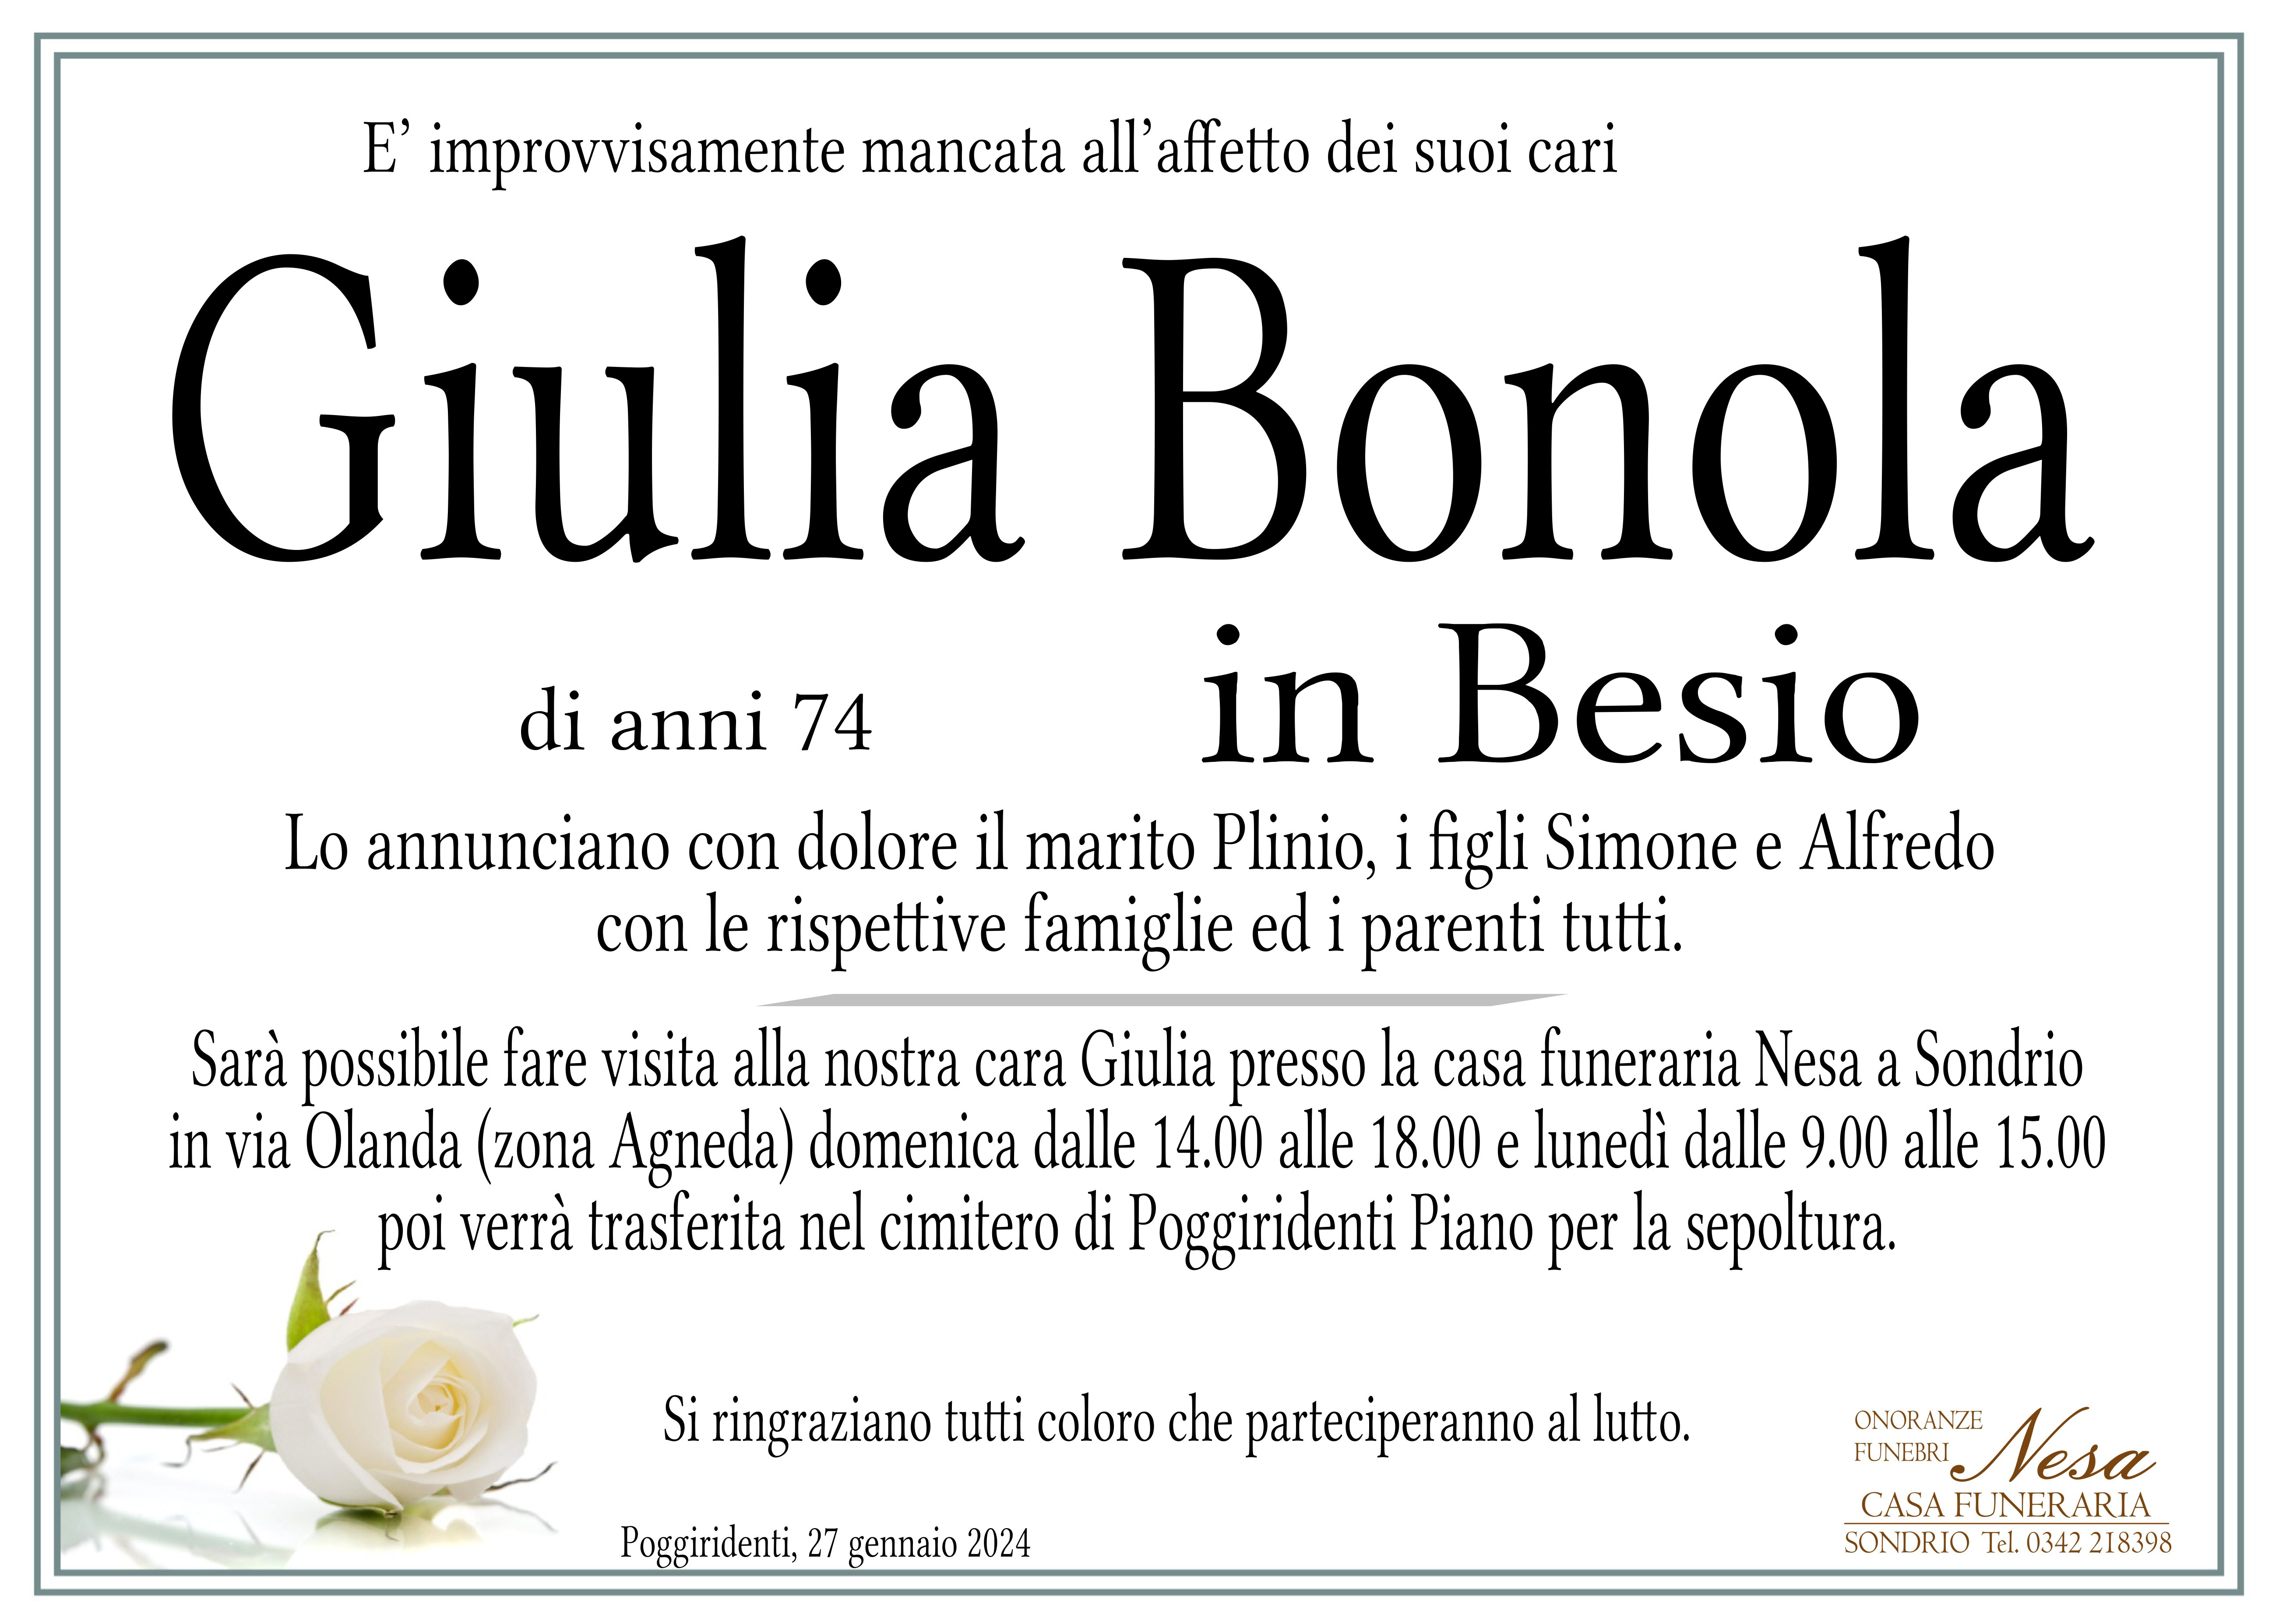 Necrologio Giulia Bonola in Besio